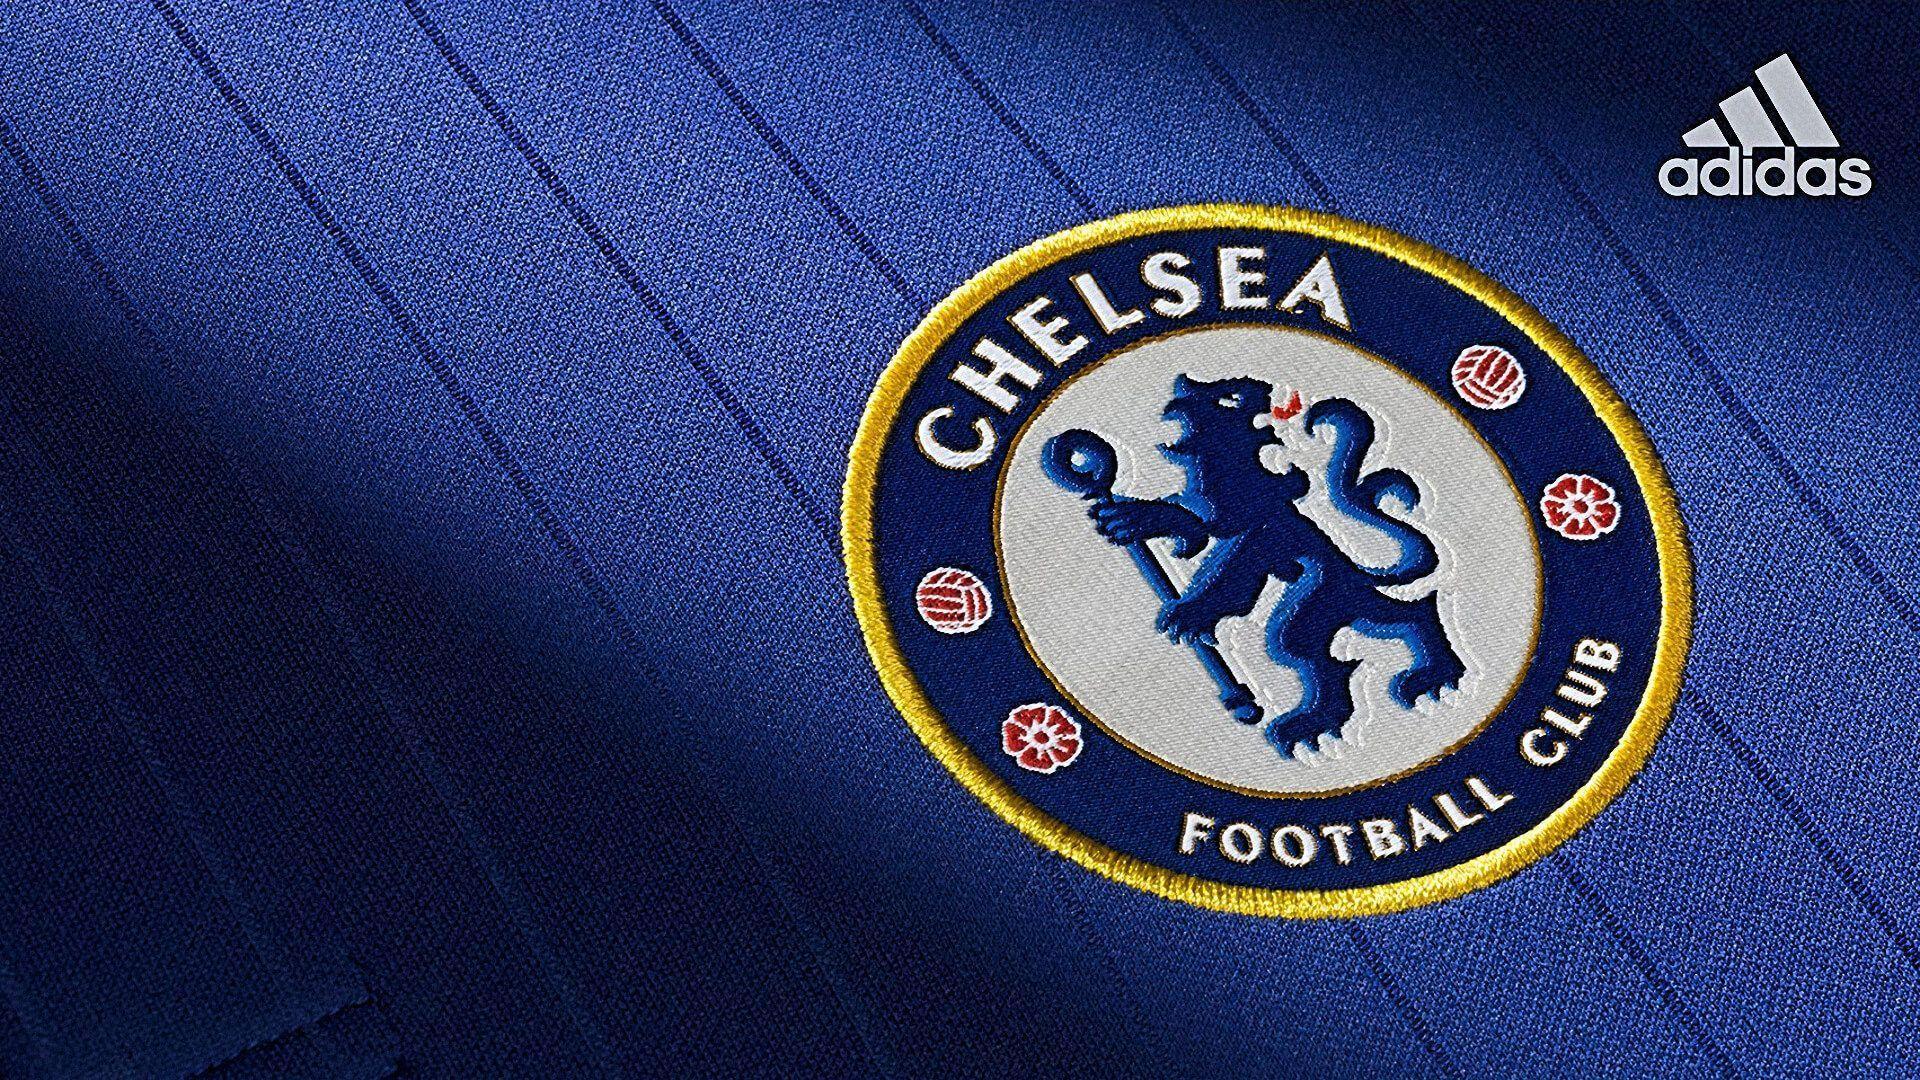 Chelsea Logo Champions League wallpaper HD 2016 in Soccer